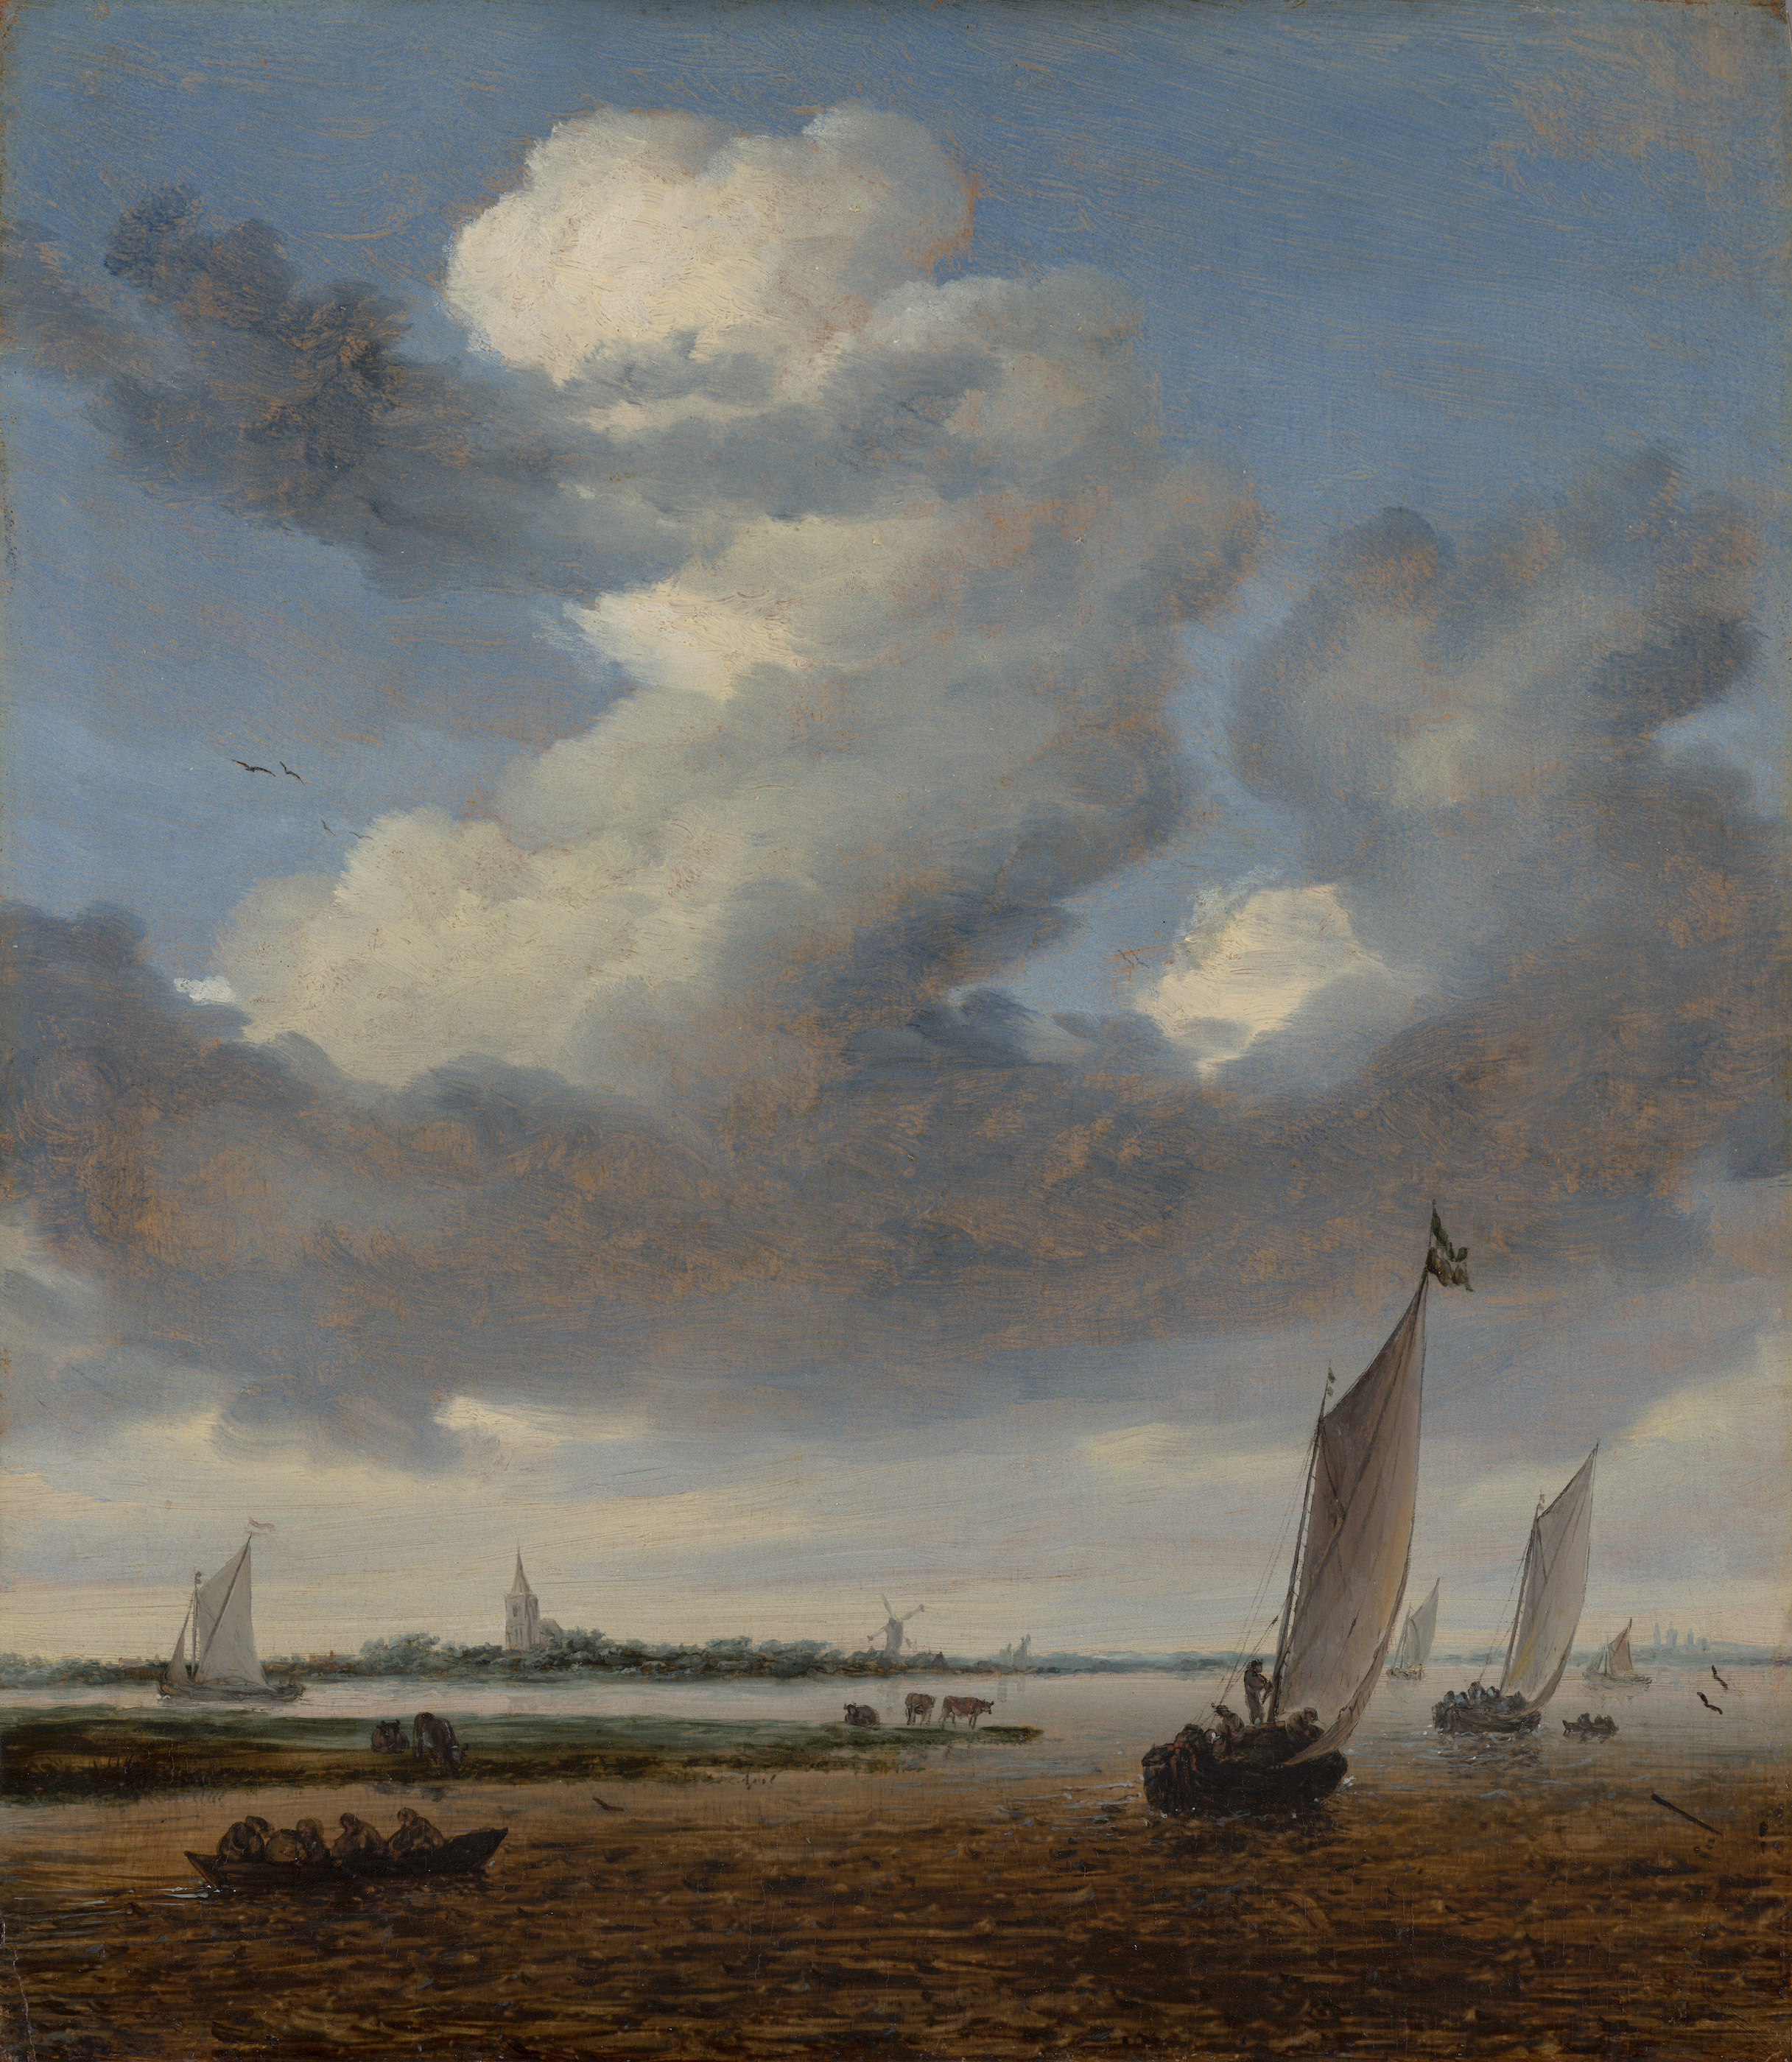 從維克梅爾看貝弗裏克 by Salomon van Ruysdael - 1661 - 41 x 35.5 cm 